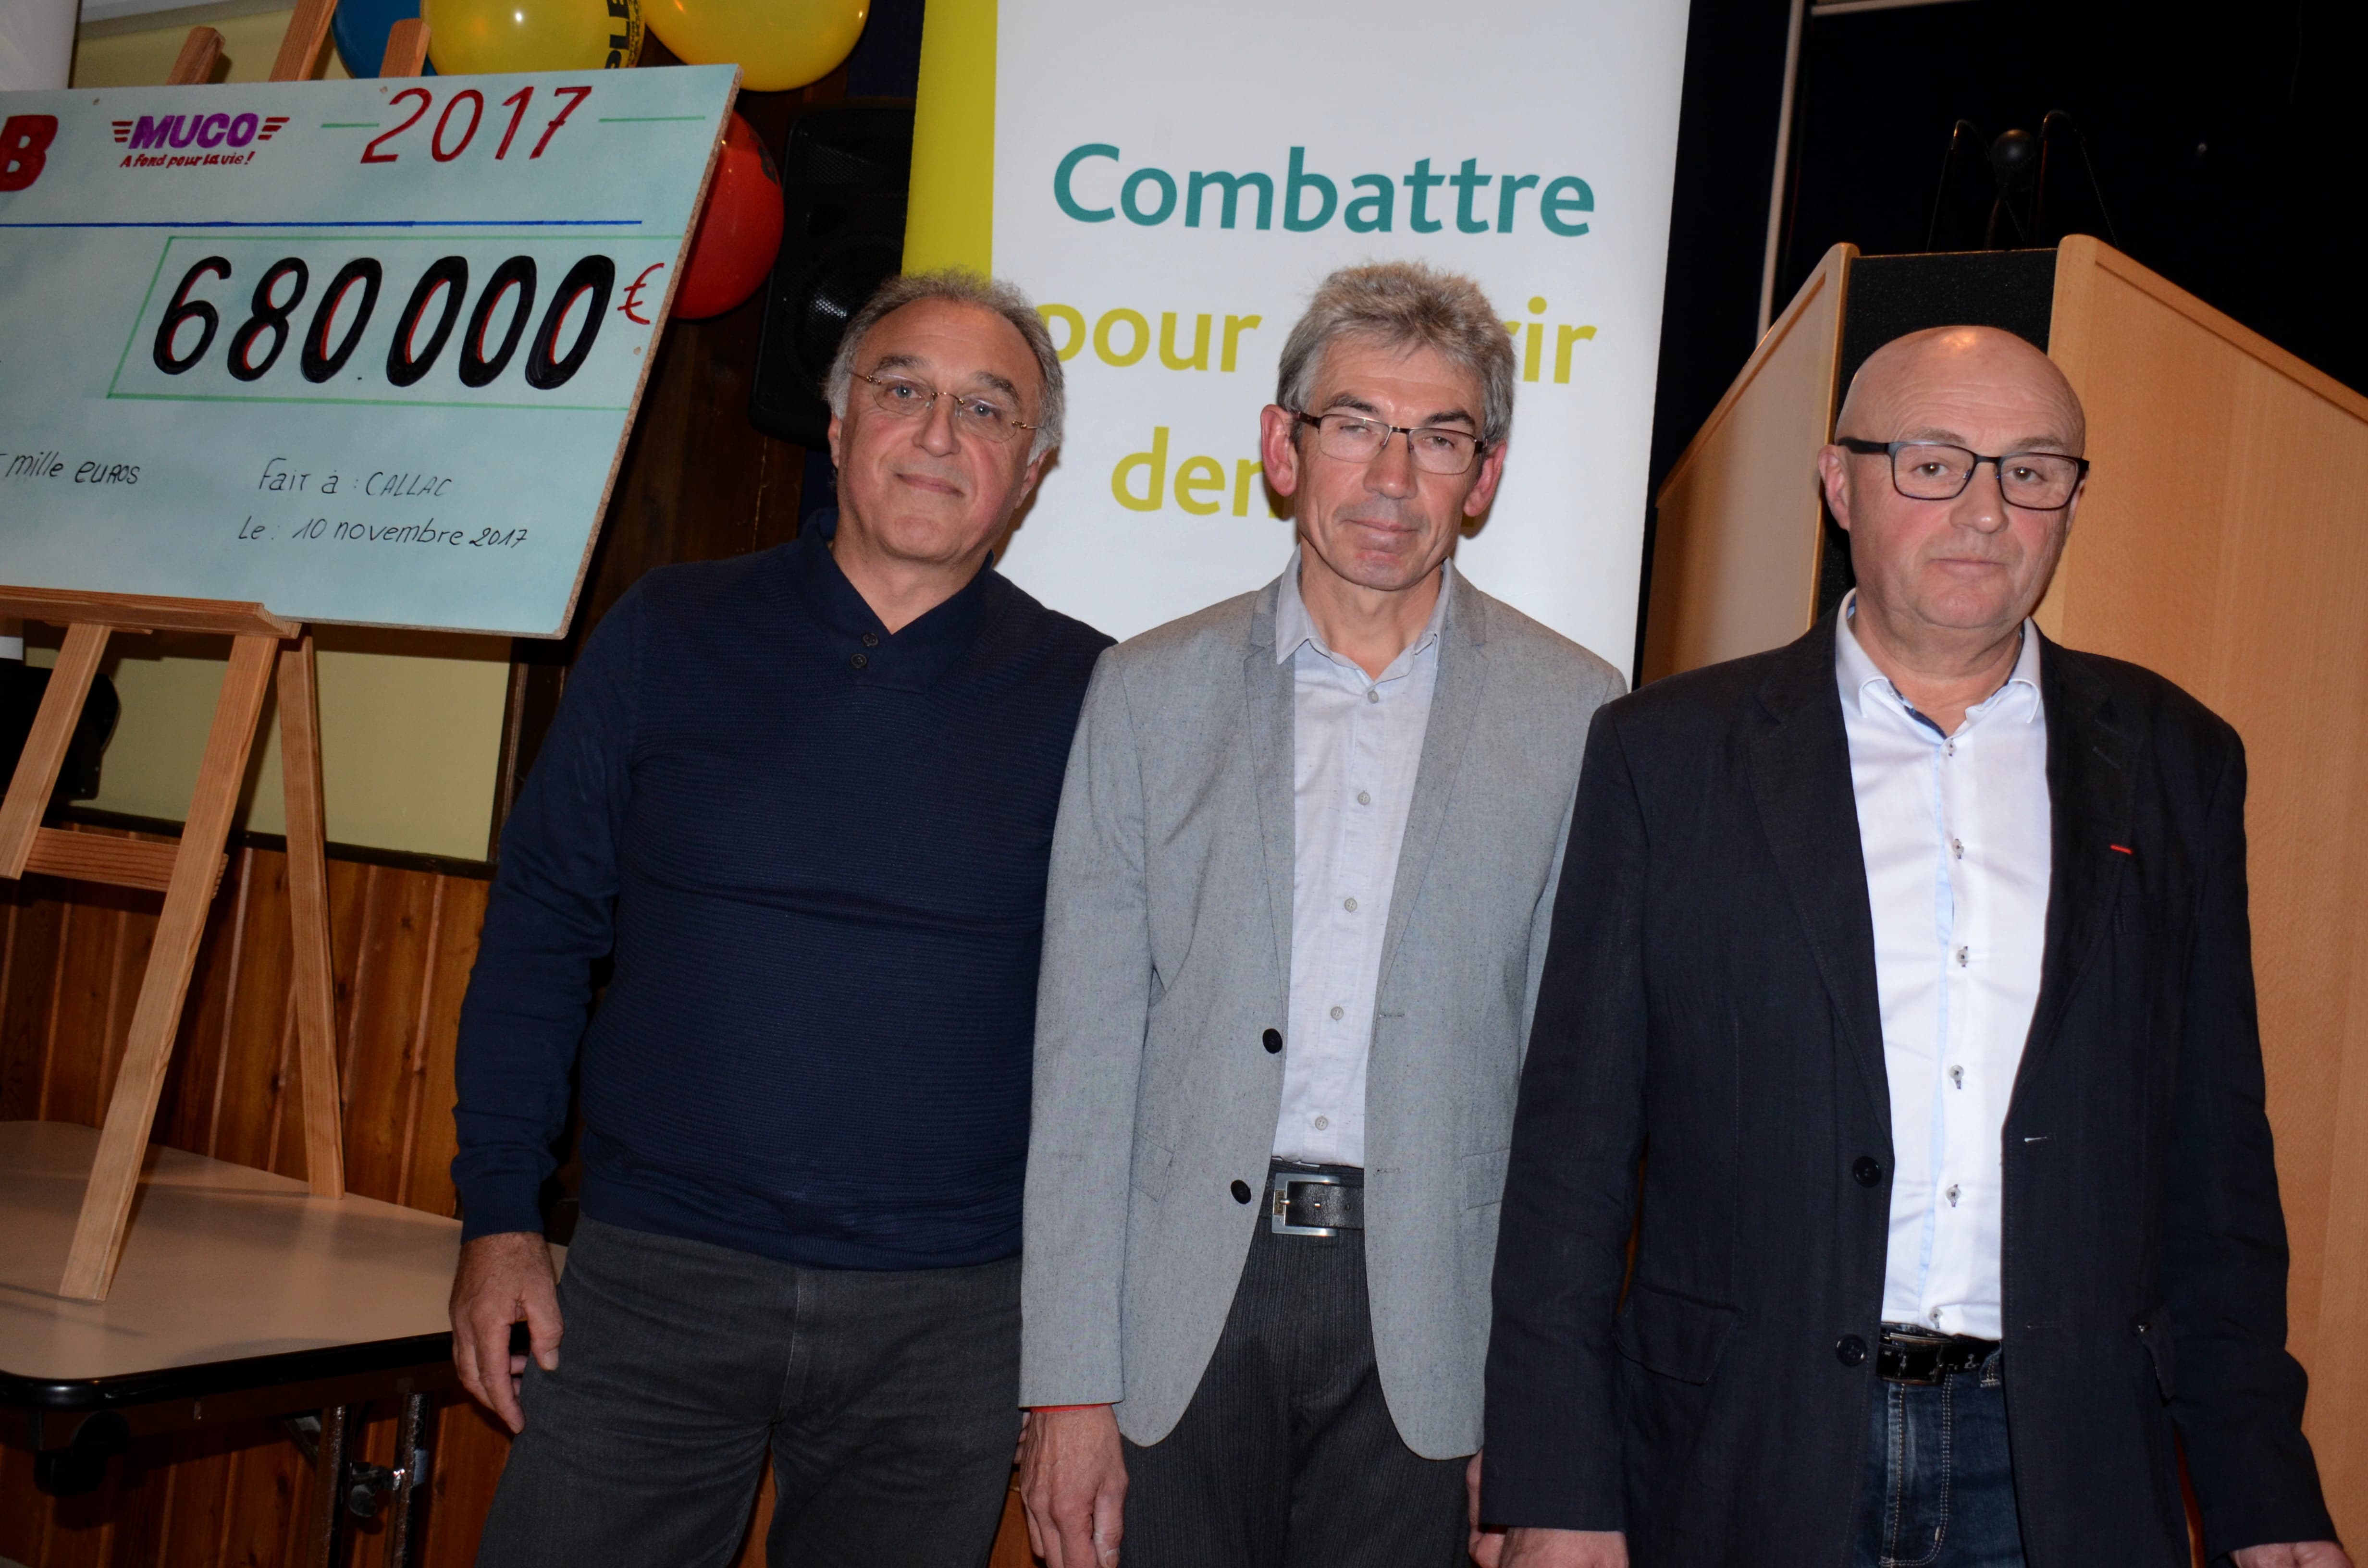 Co présidents PLB MUCO, Yannick Cornanguer, Daniel Bercot, Dominique Fois